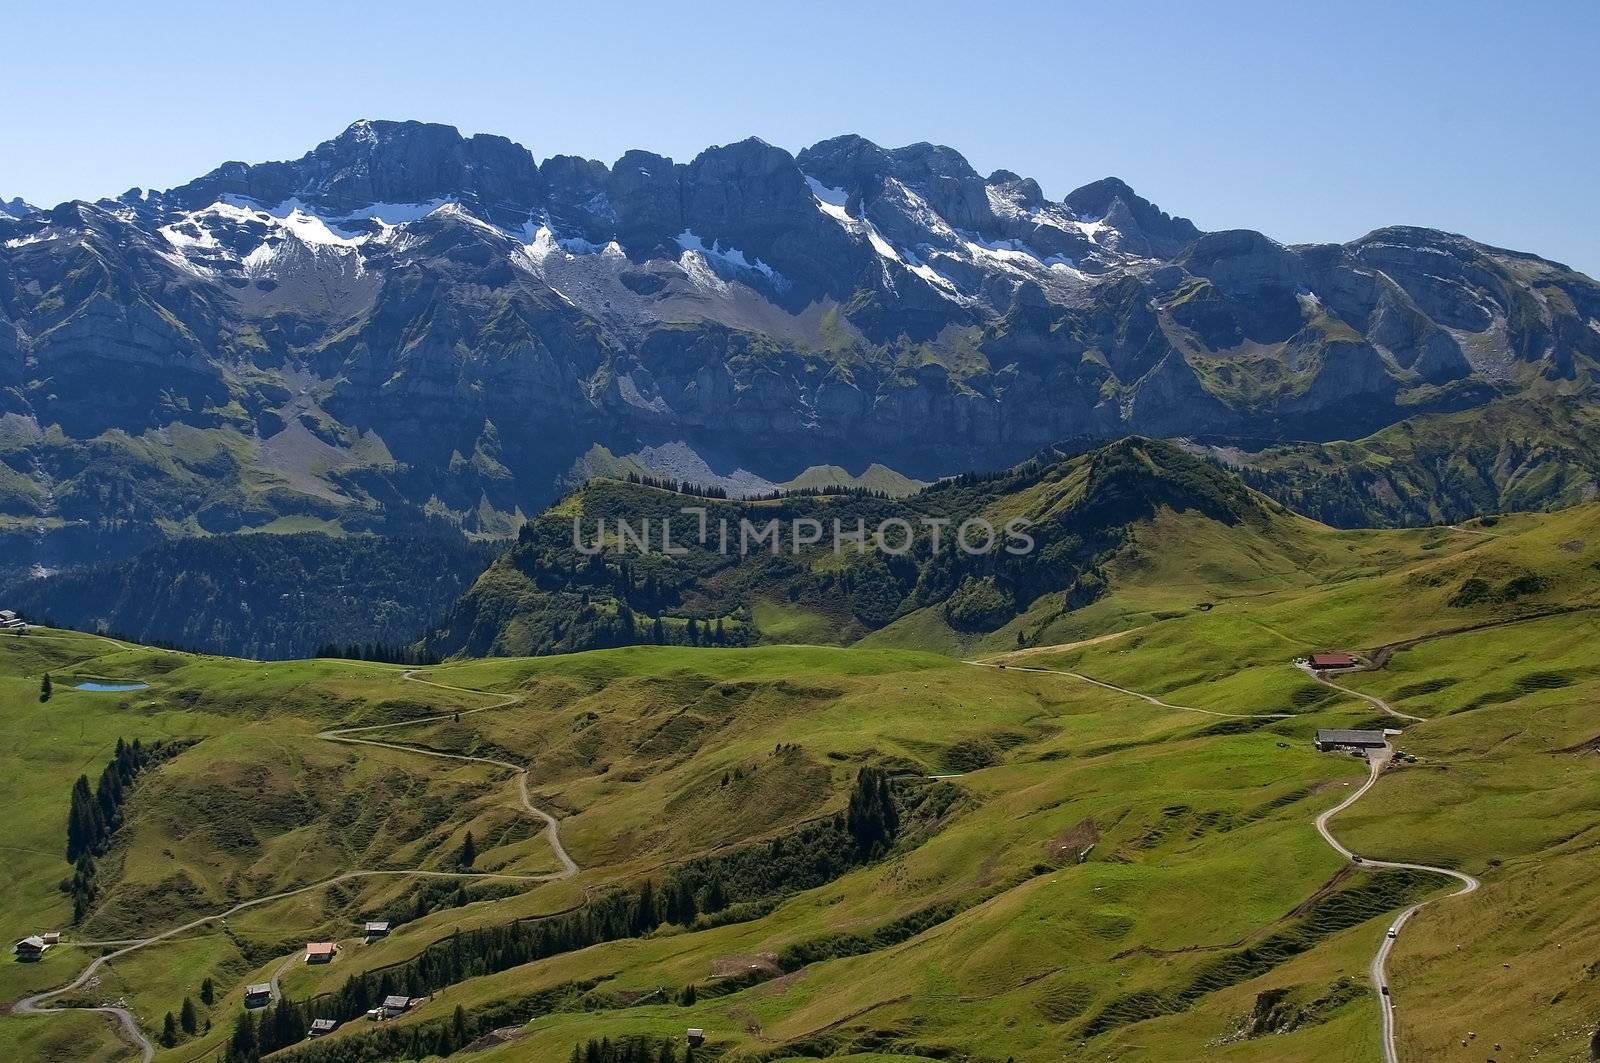 alpine meadows by irisphoto4